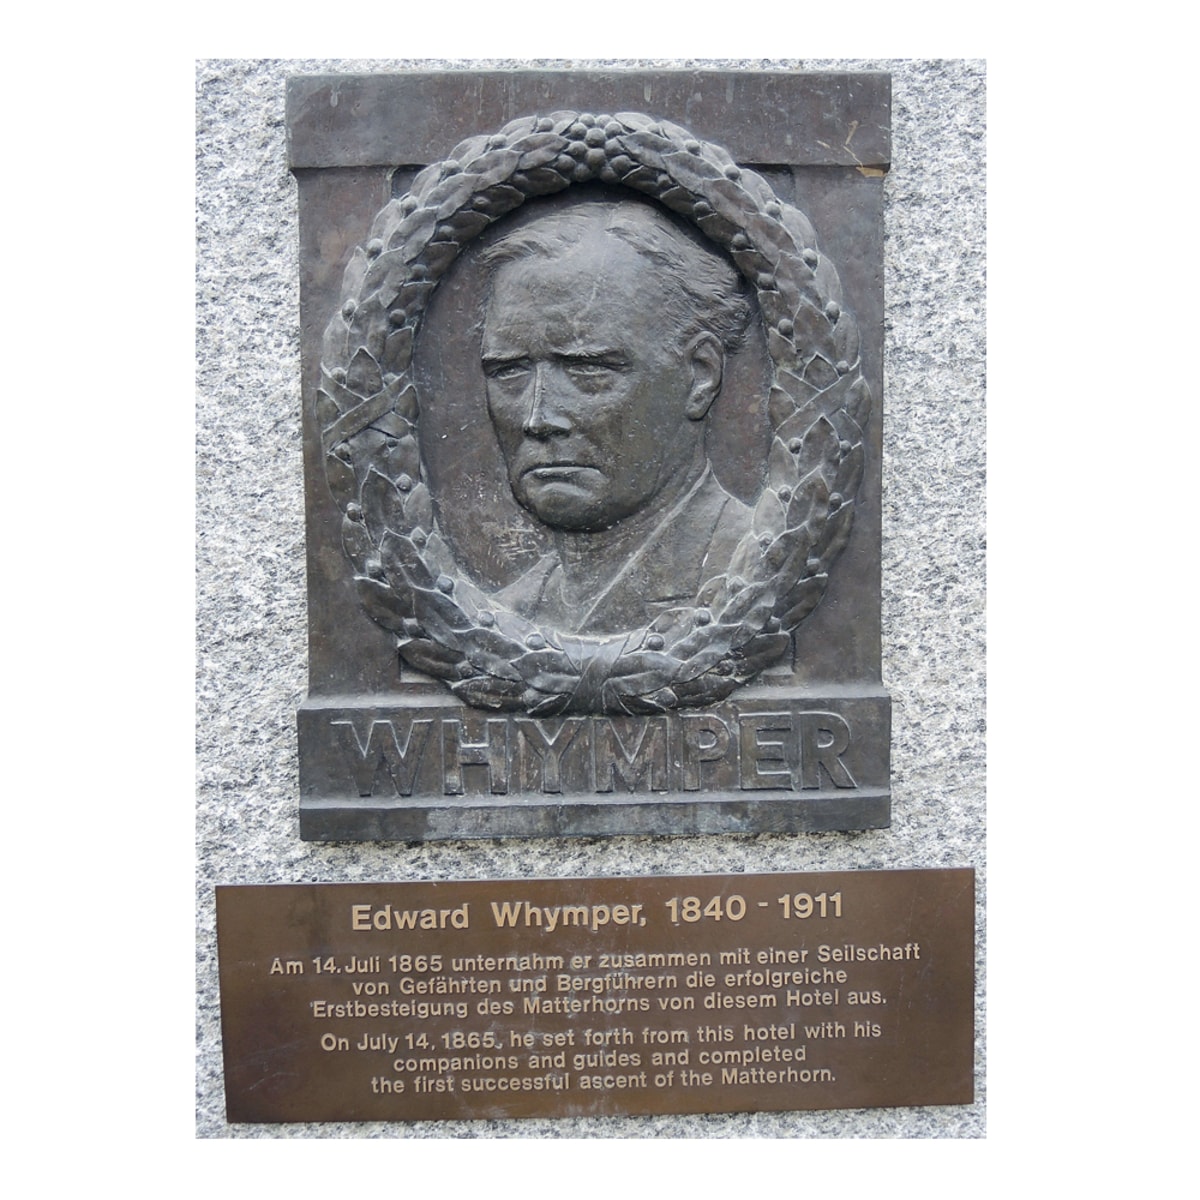 <p>Nach seinem Erfolg am Matterhorn zog es Whymper nach Südamerika. 1880 gelang ihm zusammen mit seinem ehemaligen "Kontrahenten" die Erstbesteigung des Chimborazo in Ecuador. Bis zu seinem Tod im Jahr 1911 widmete sich der Brite verstärkt seiner Tätigkeit als Schriftsteller. Gedenktafel am Hotel "Monte Rosa" in Zermatt. </p>